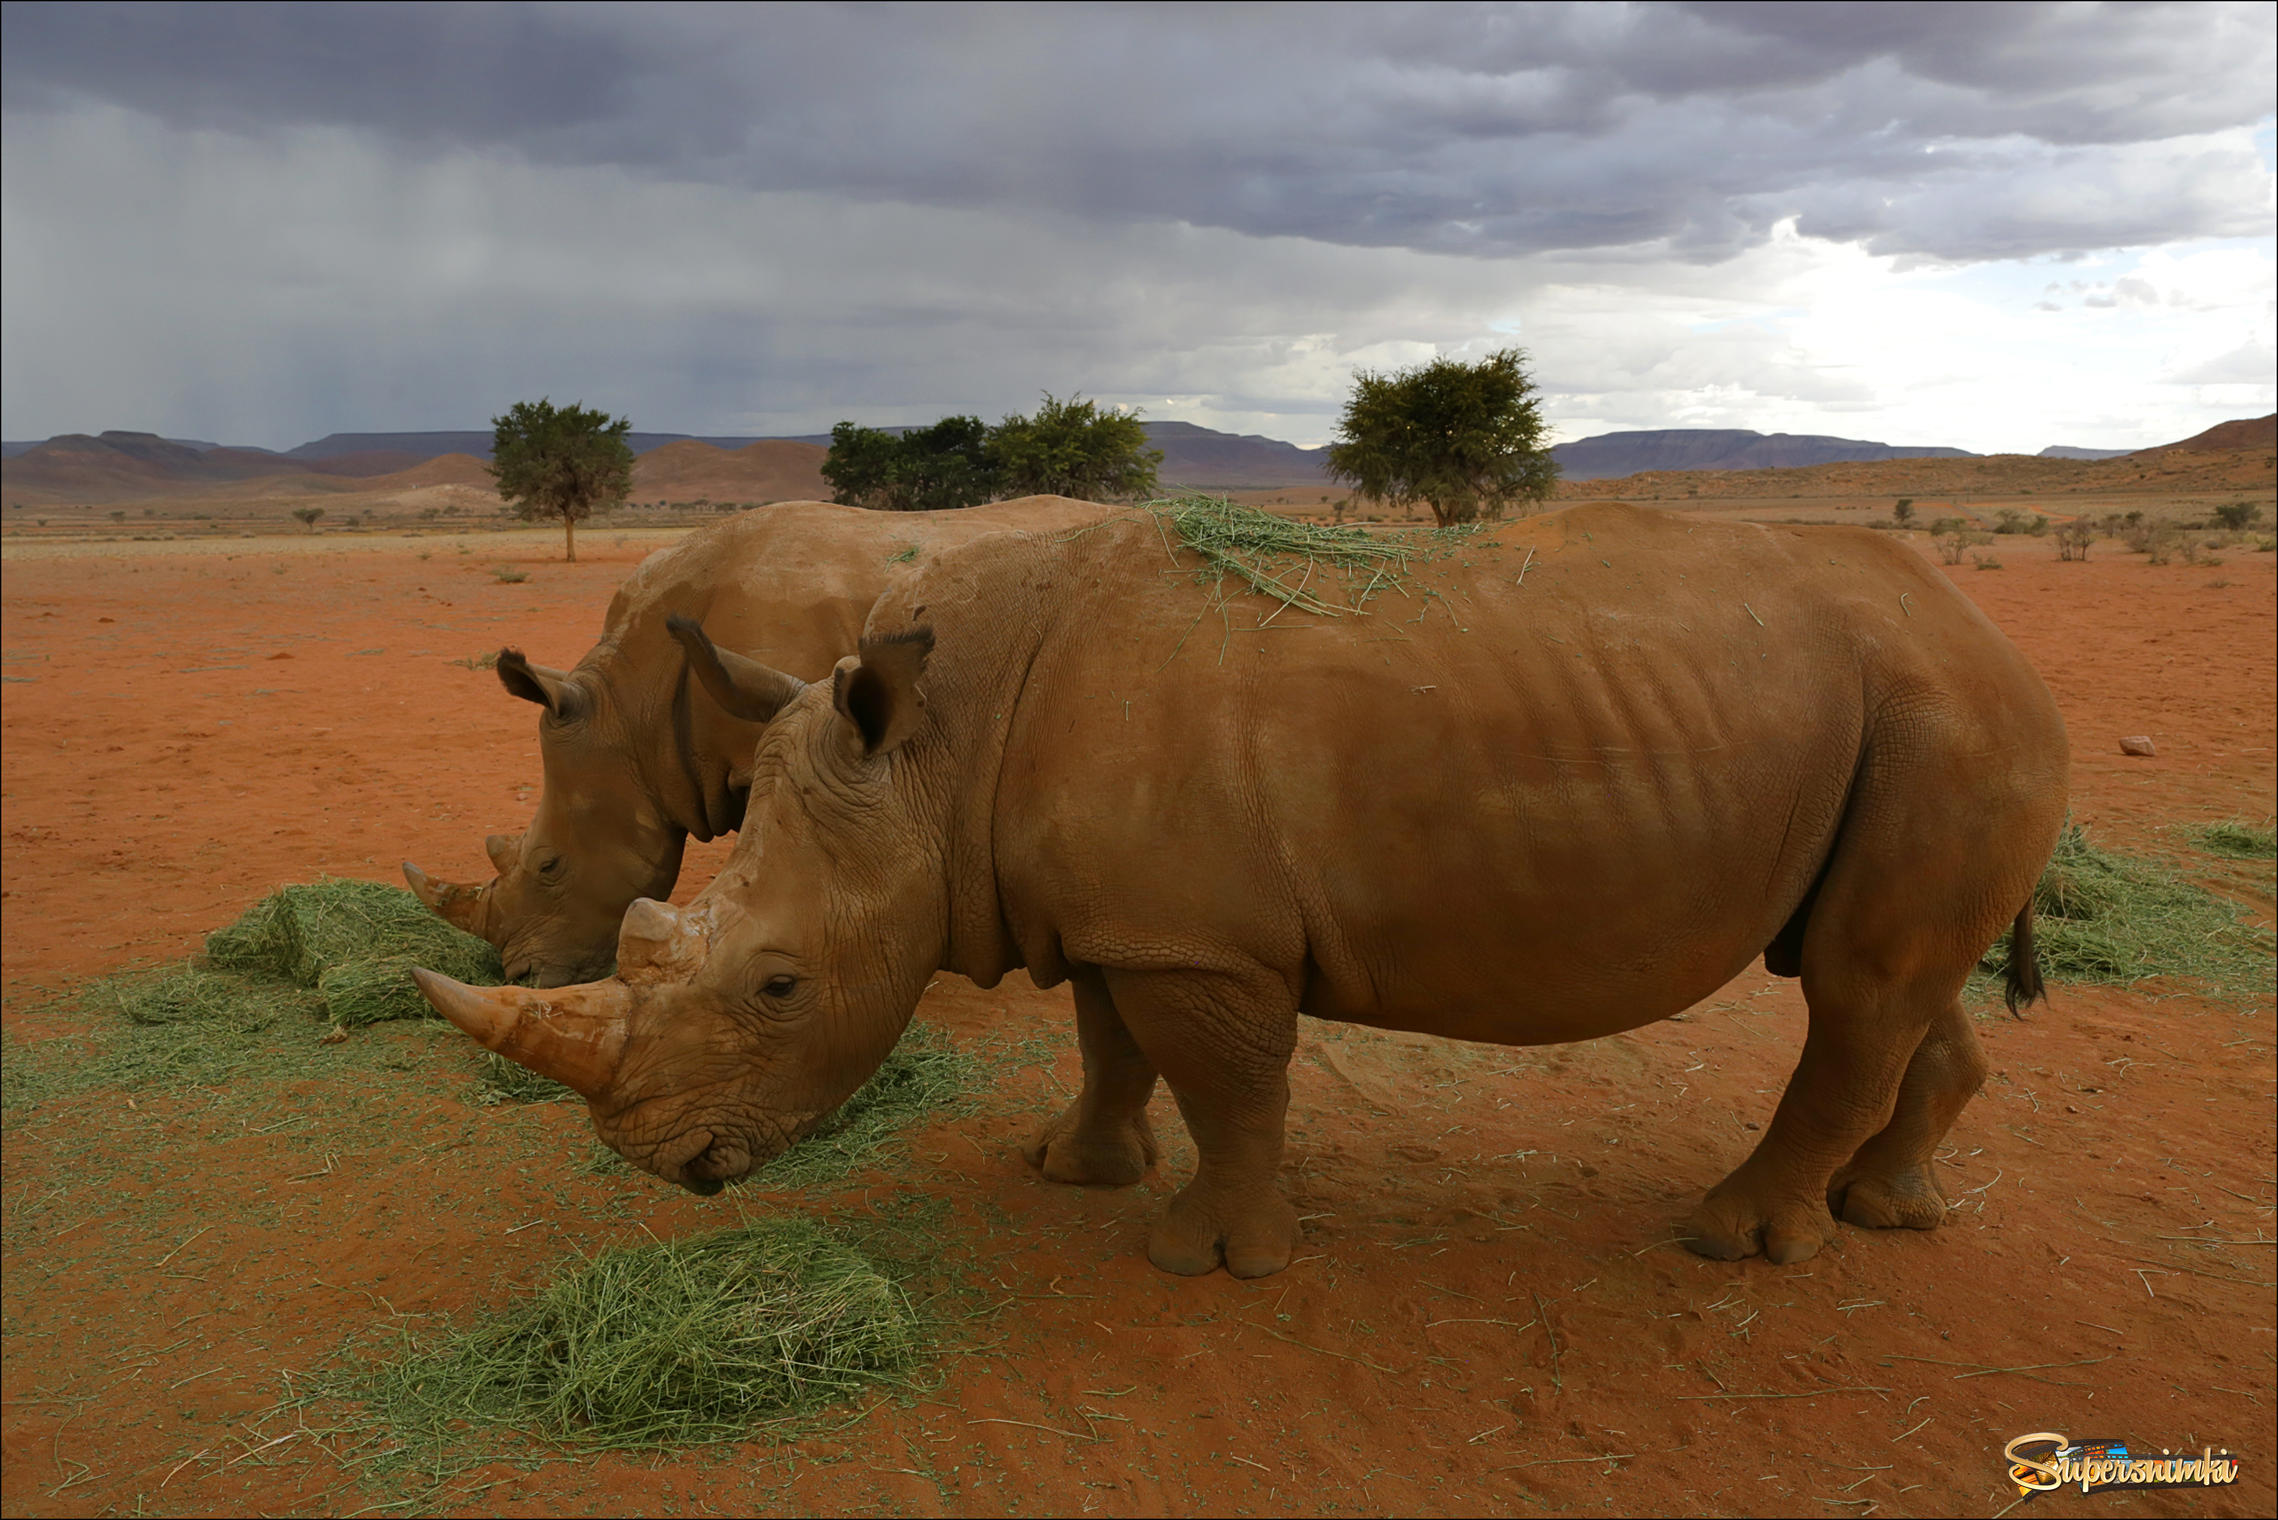 Диких носорогов в Намибии прикармливают, чтобы показать туристам. Можно проехать десятки километров по саванне и пустыне и не встретить ни одного животного!